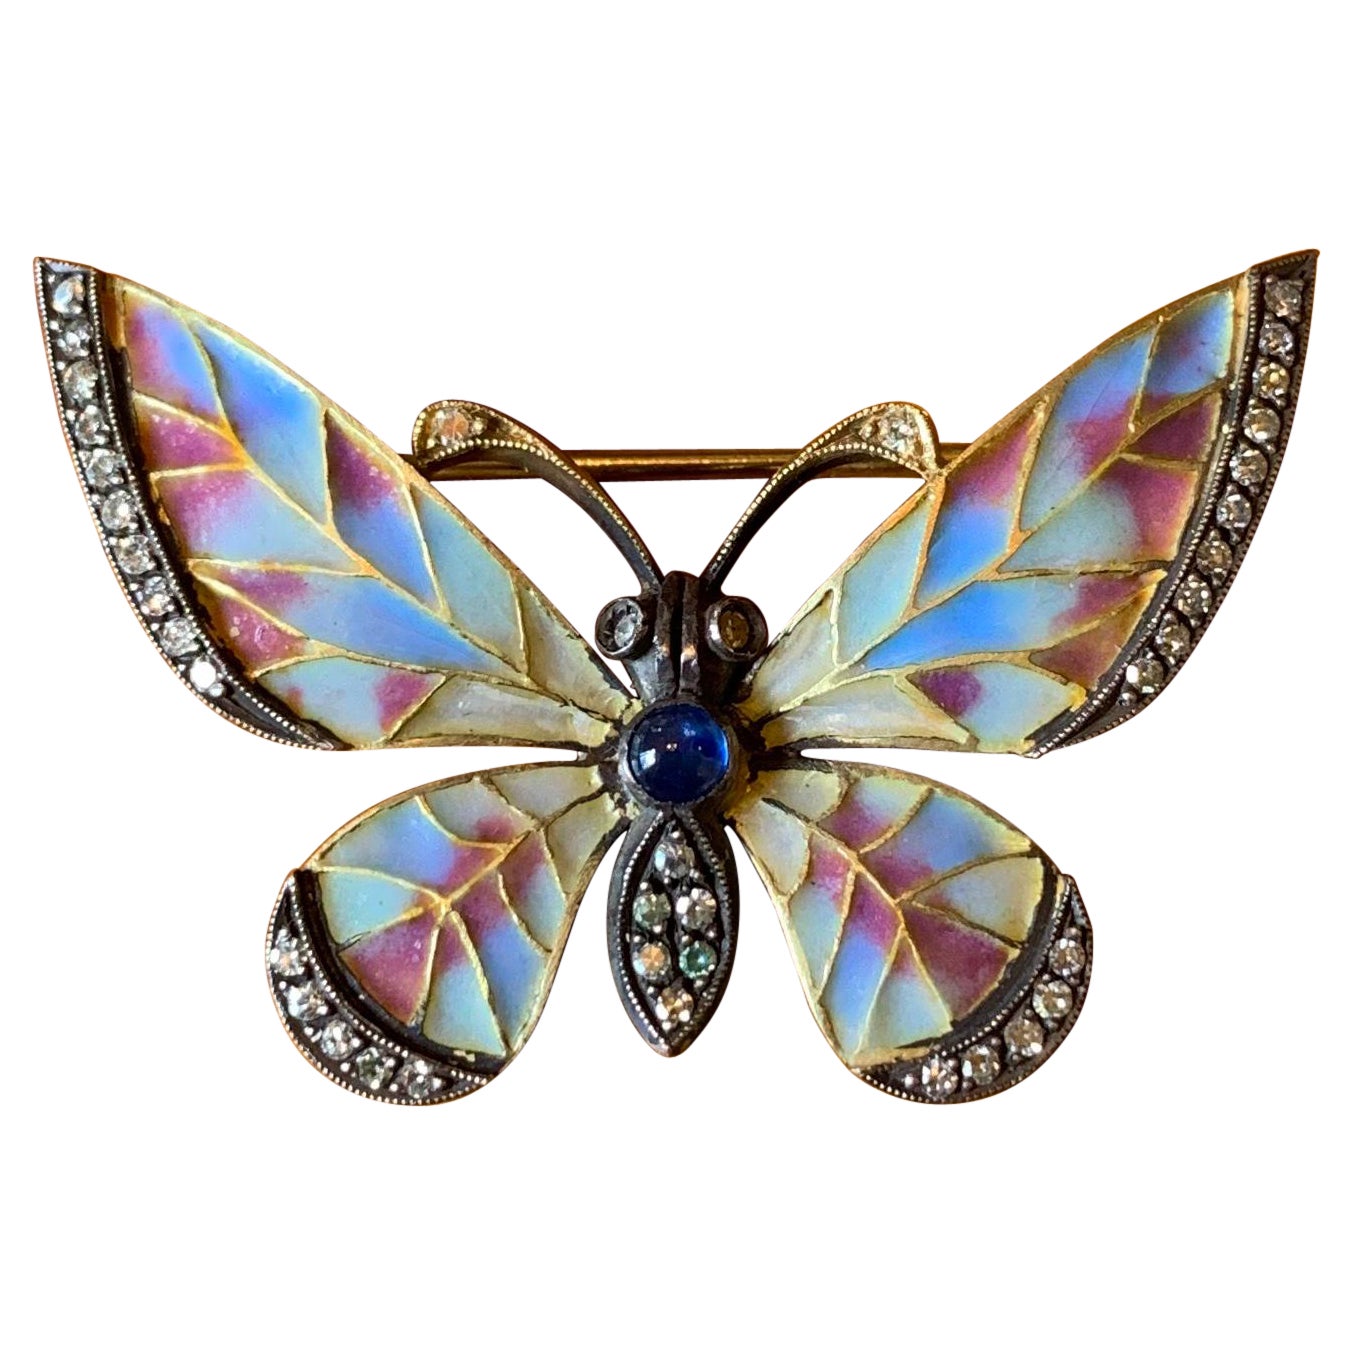 Plique-a-Jour Enamel Sapphire Diamond Butterfly Brooch Art Nouveau 18 Karat Gold For Sale